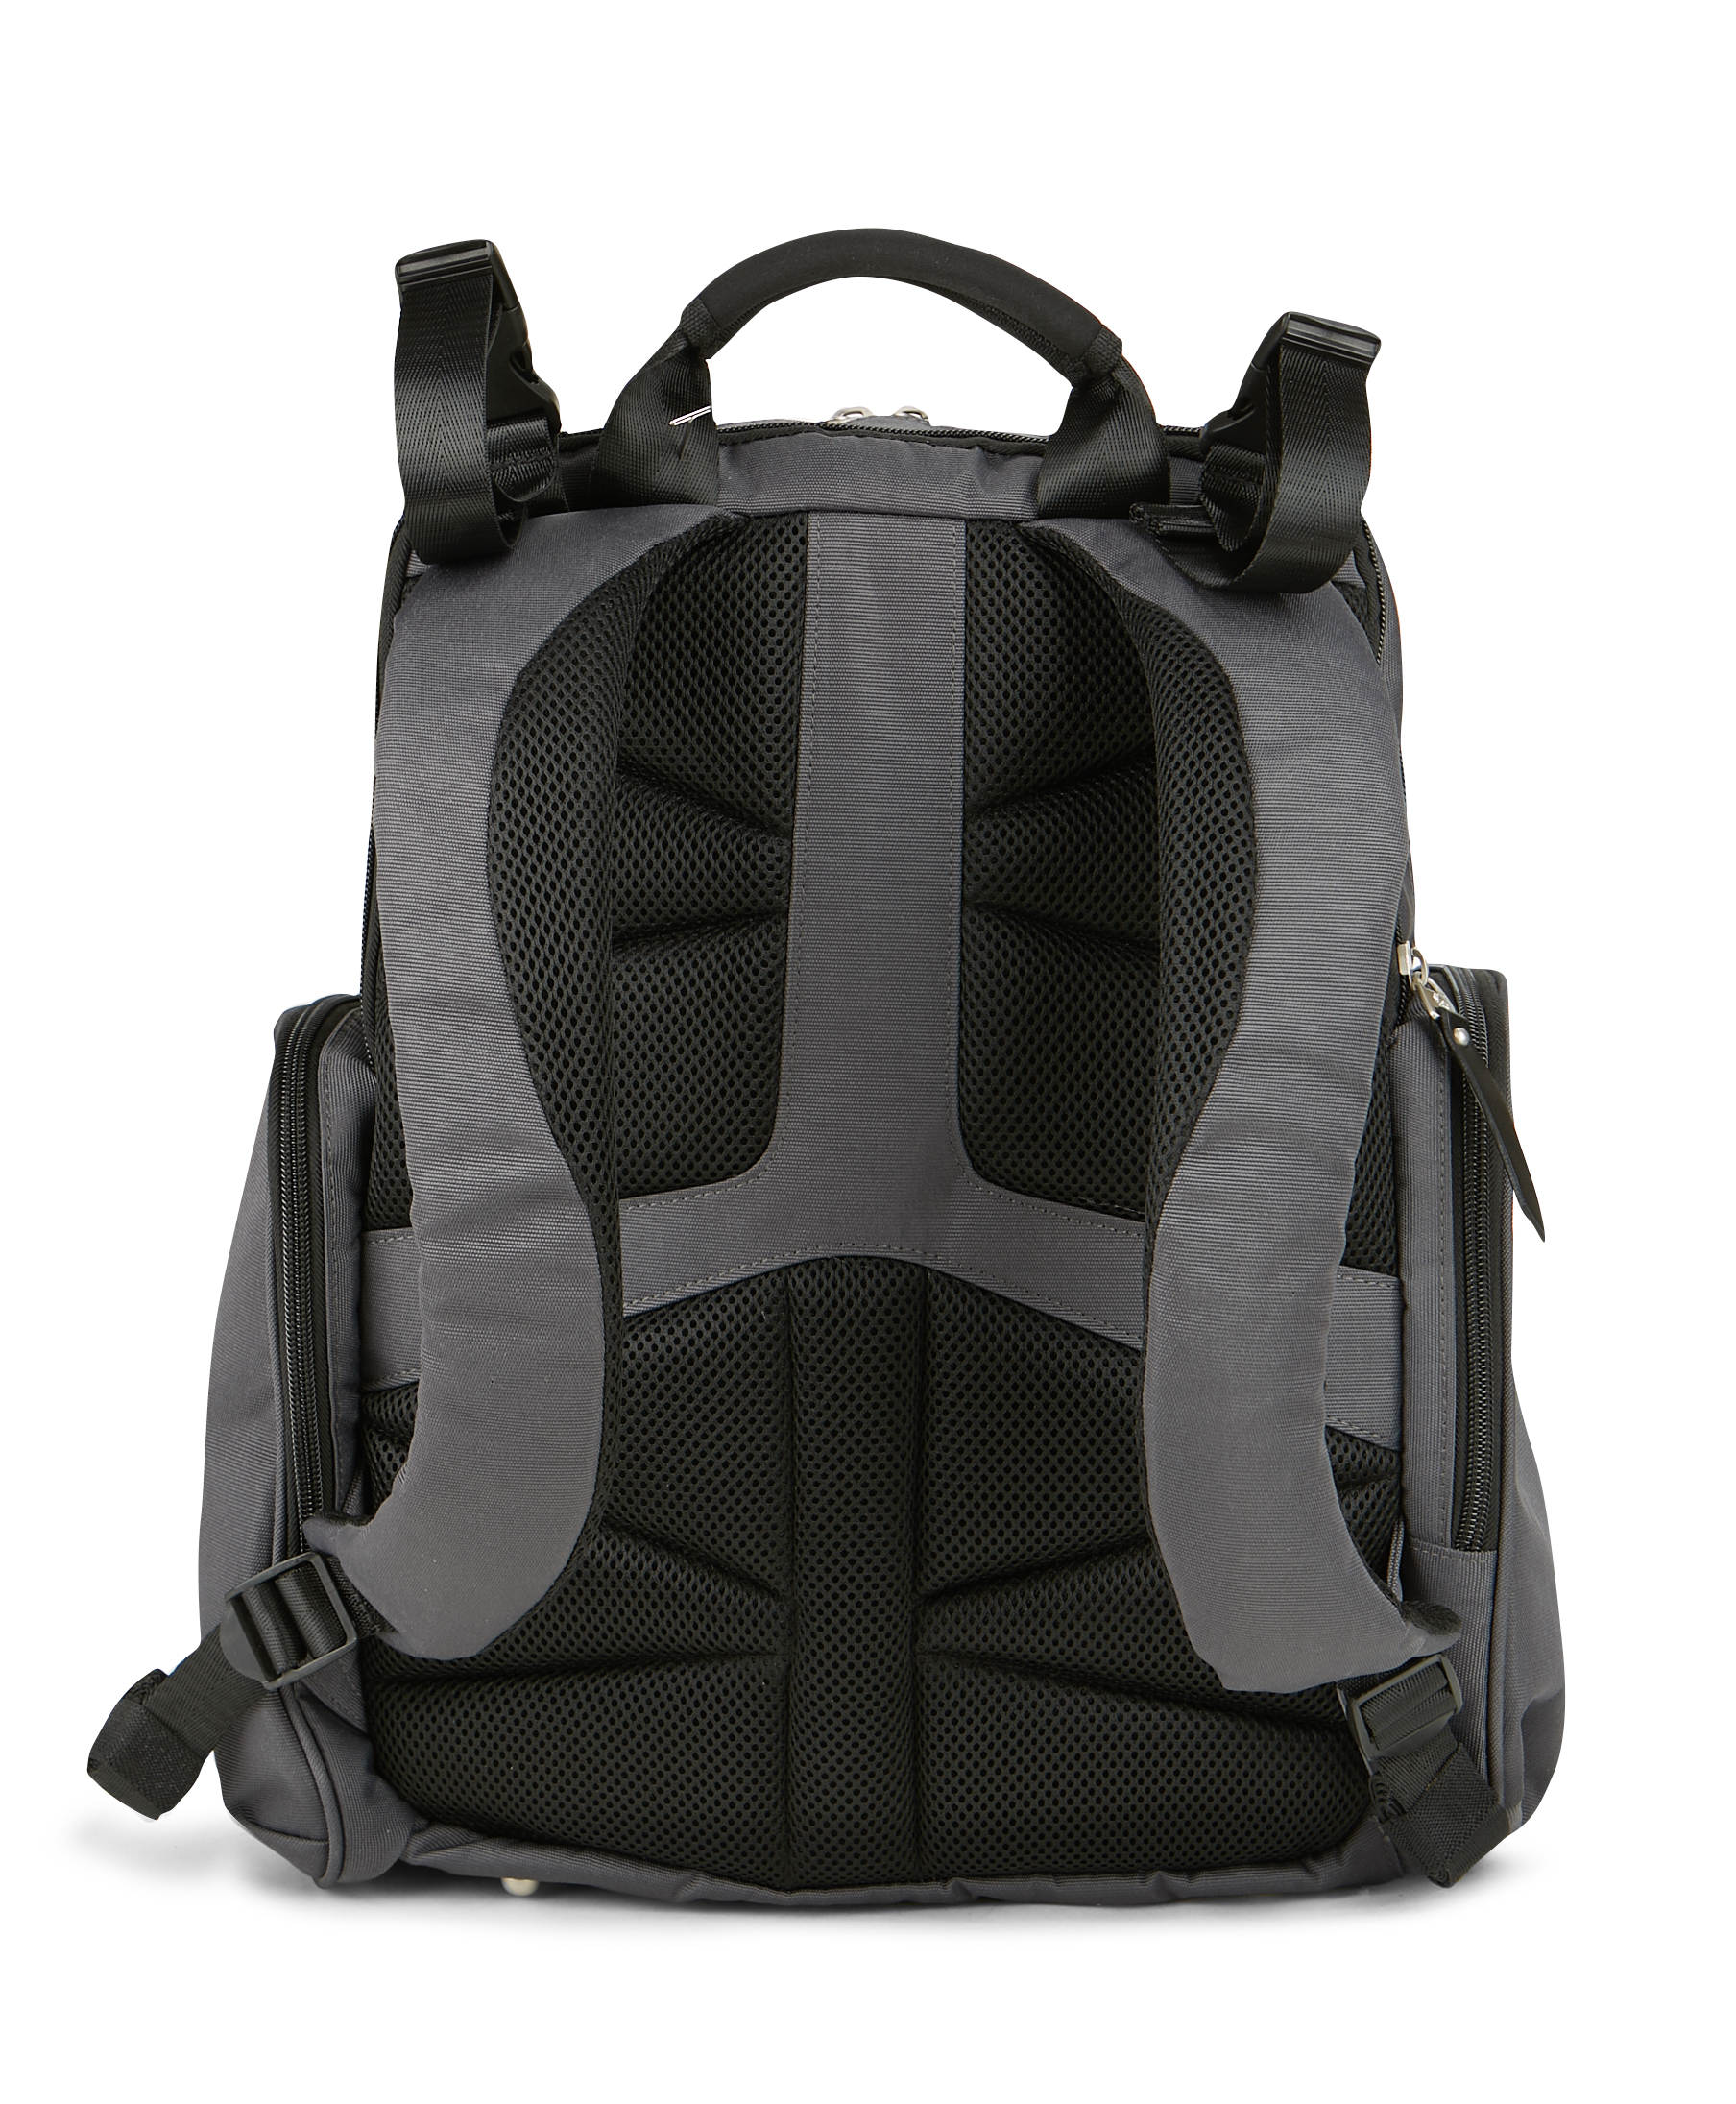 Ergobaby Adjustable Shoulder Strap Inside Pockets Backpack Diaper Bags, Black - image 8 of 10